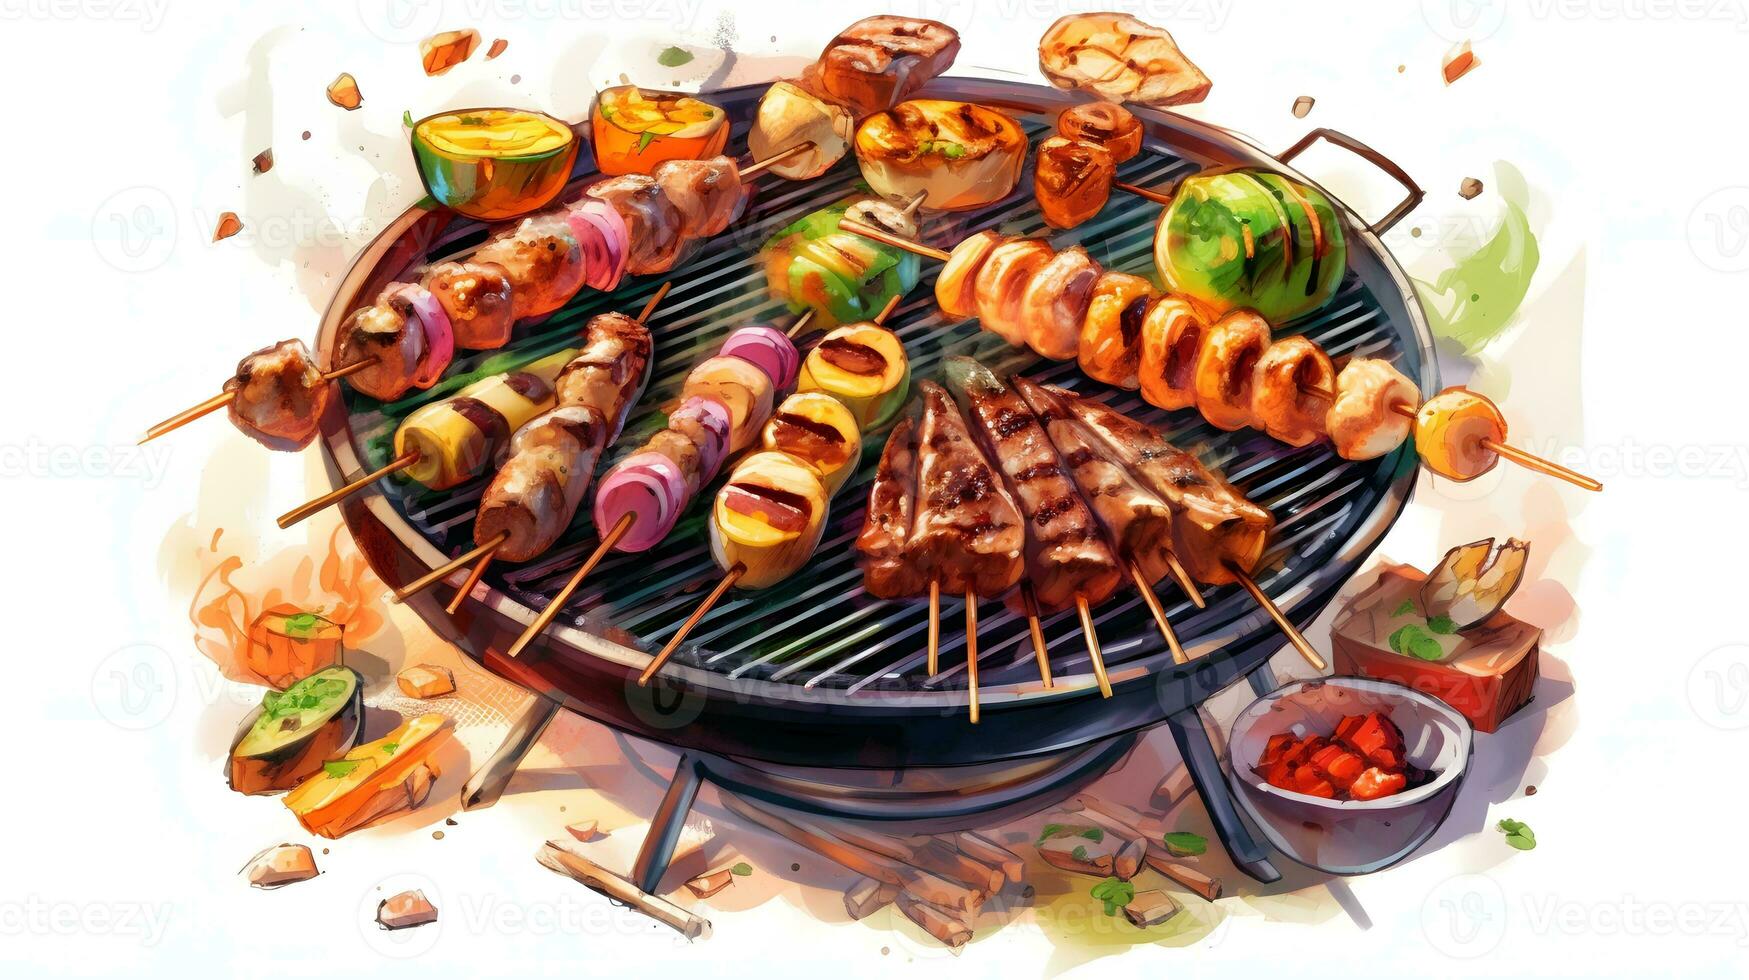 du boeuf steaks et des légumes sur le gril avec flammes. barbecue. photo